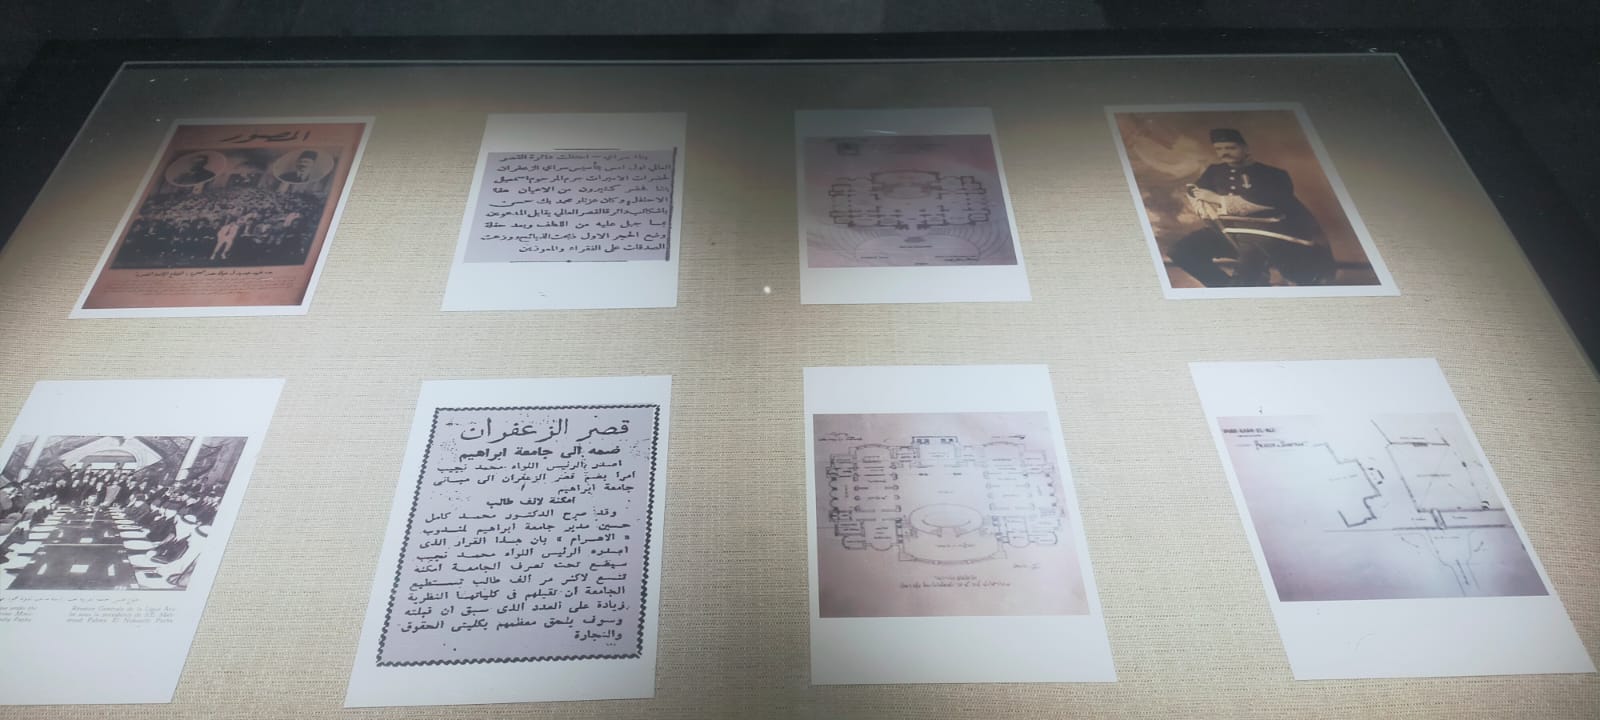 متحف جامعة عين شمس بقصر الزعفران  (19)